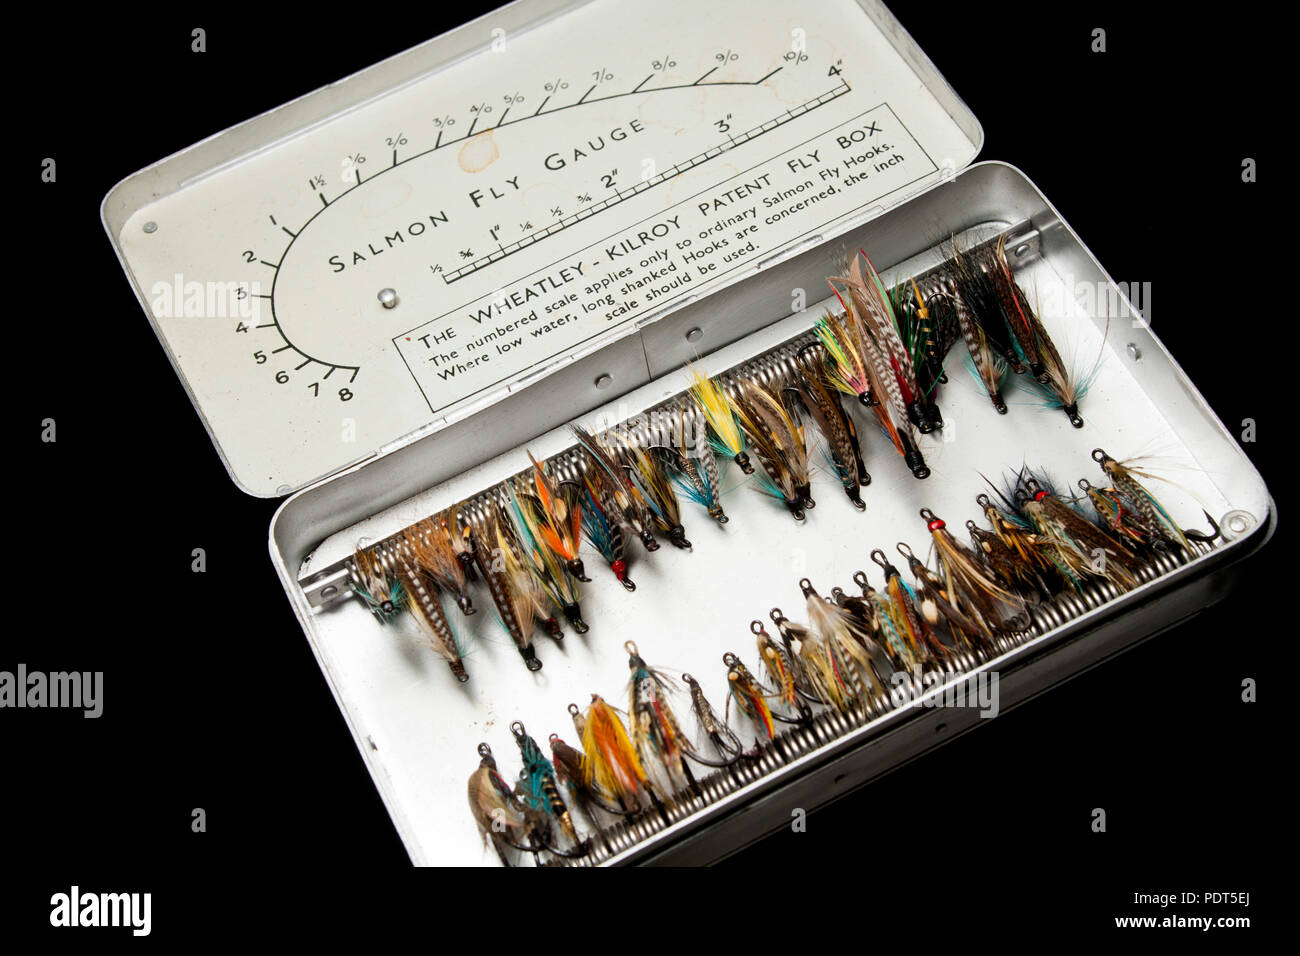 Dry Fly Box Case stock image. Image of tying, fishing - 114072395